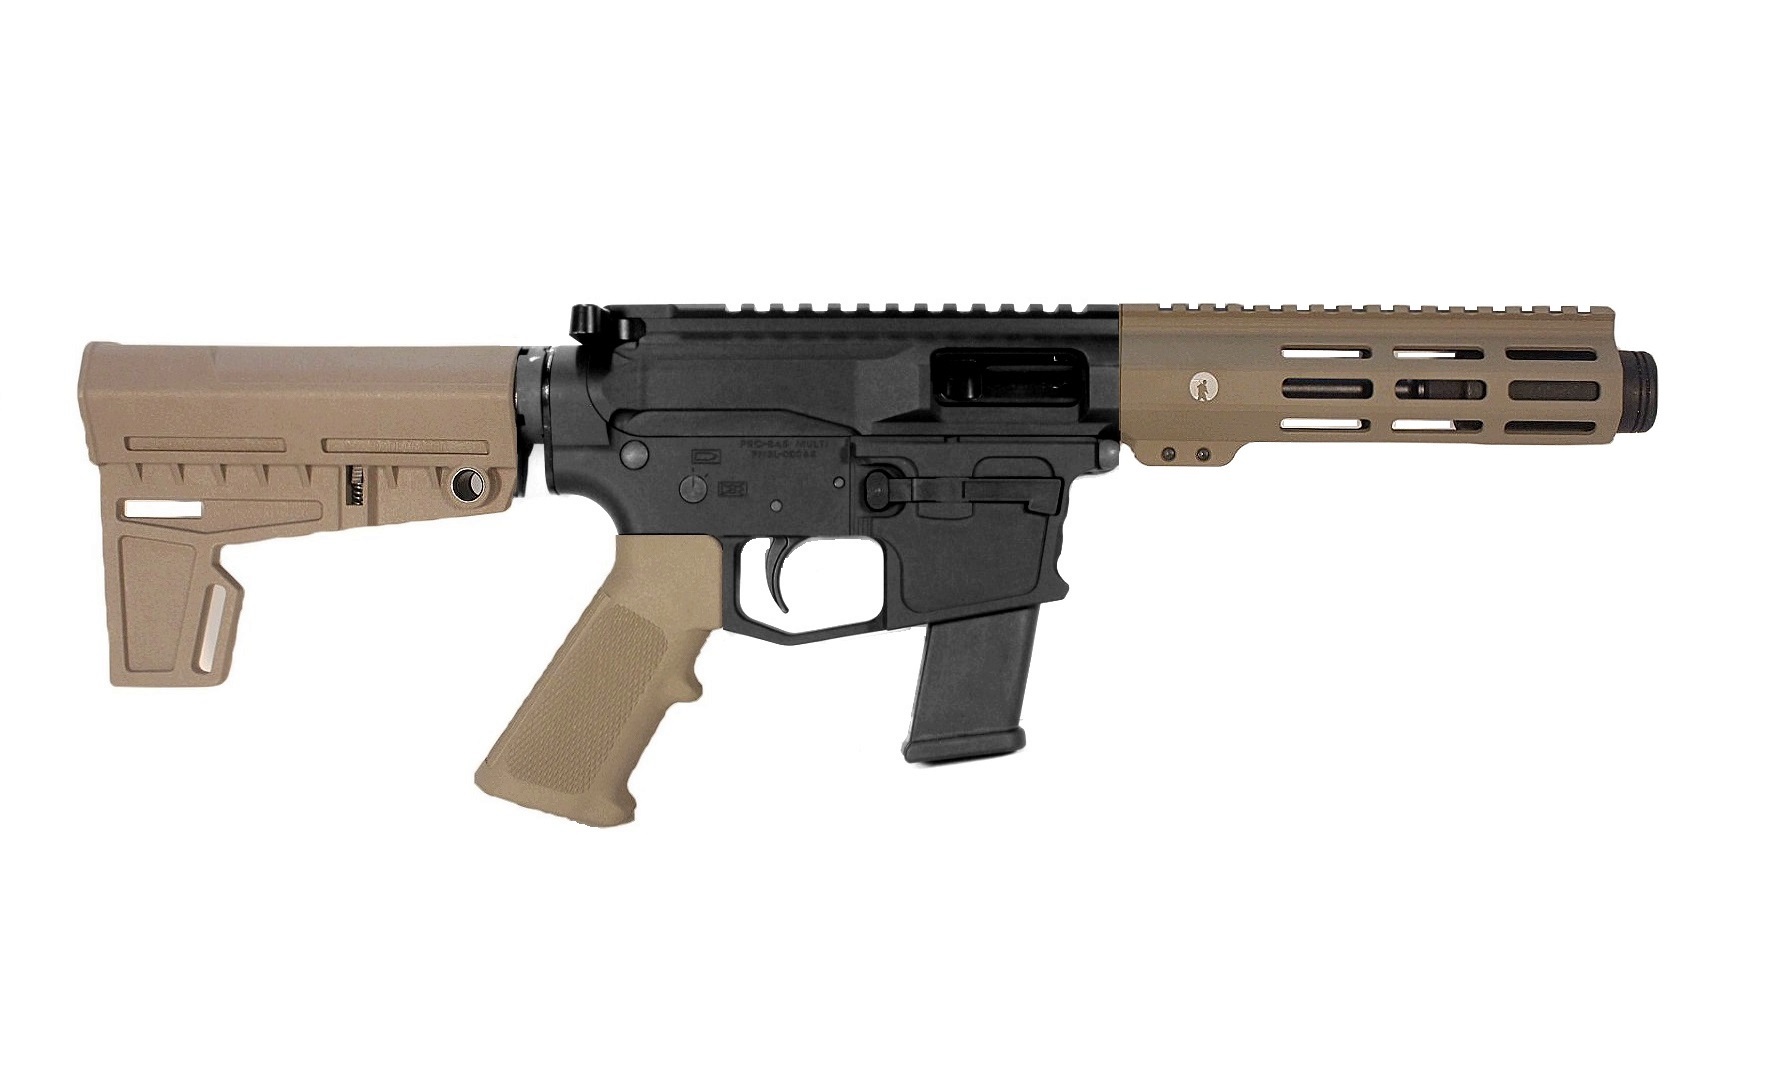 5 inch 9mm AR-9 Pistol in BLK/FDE Color 